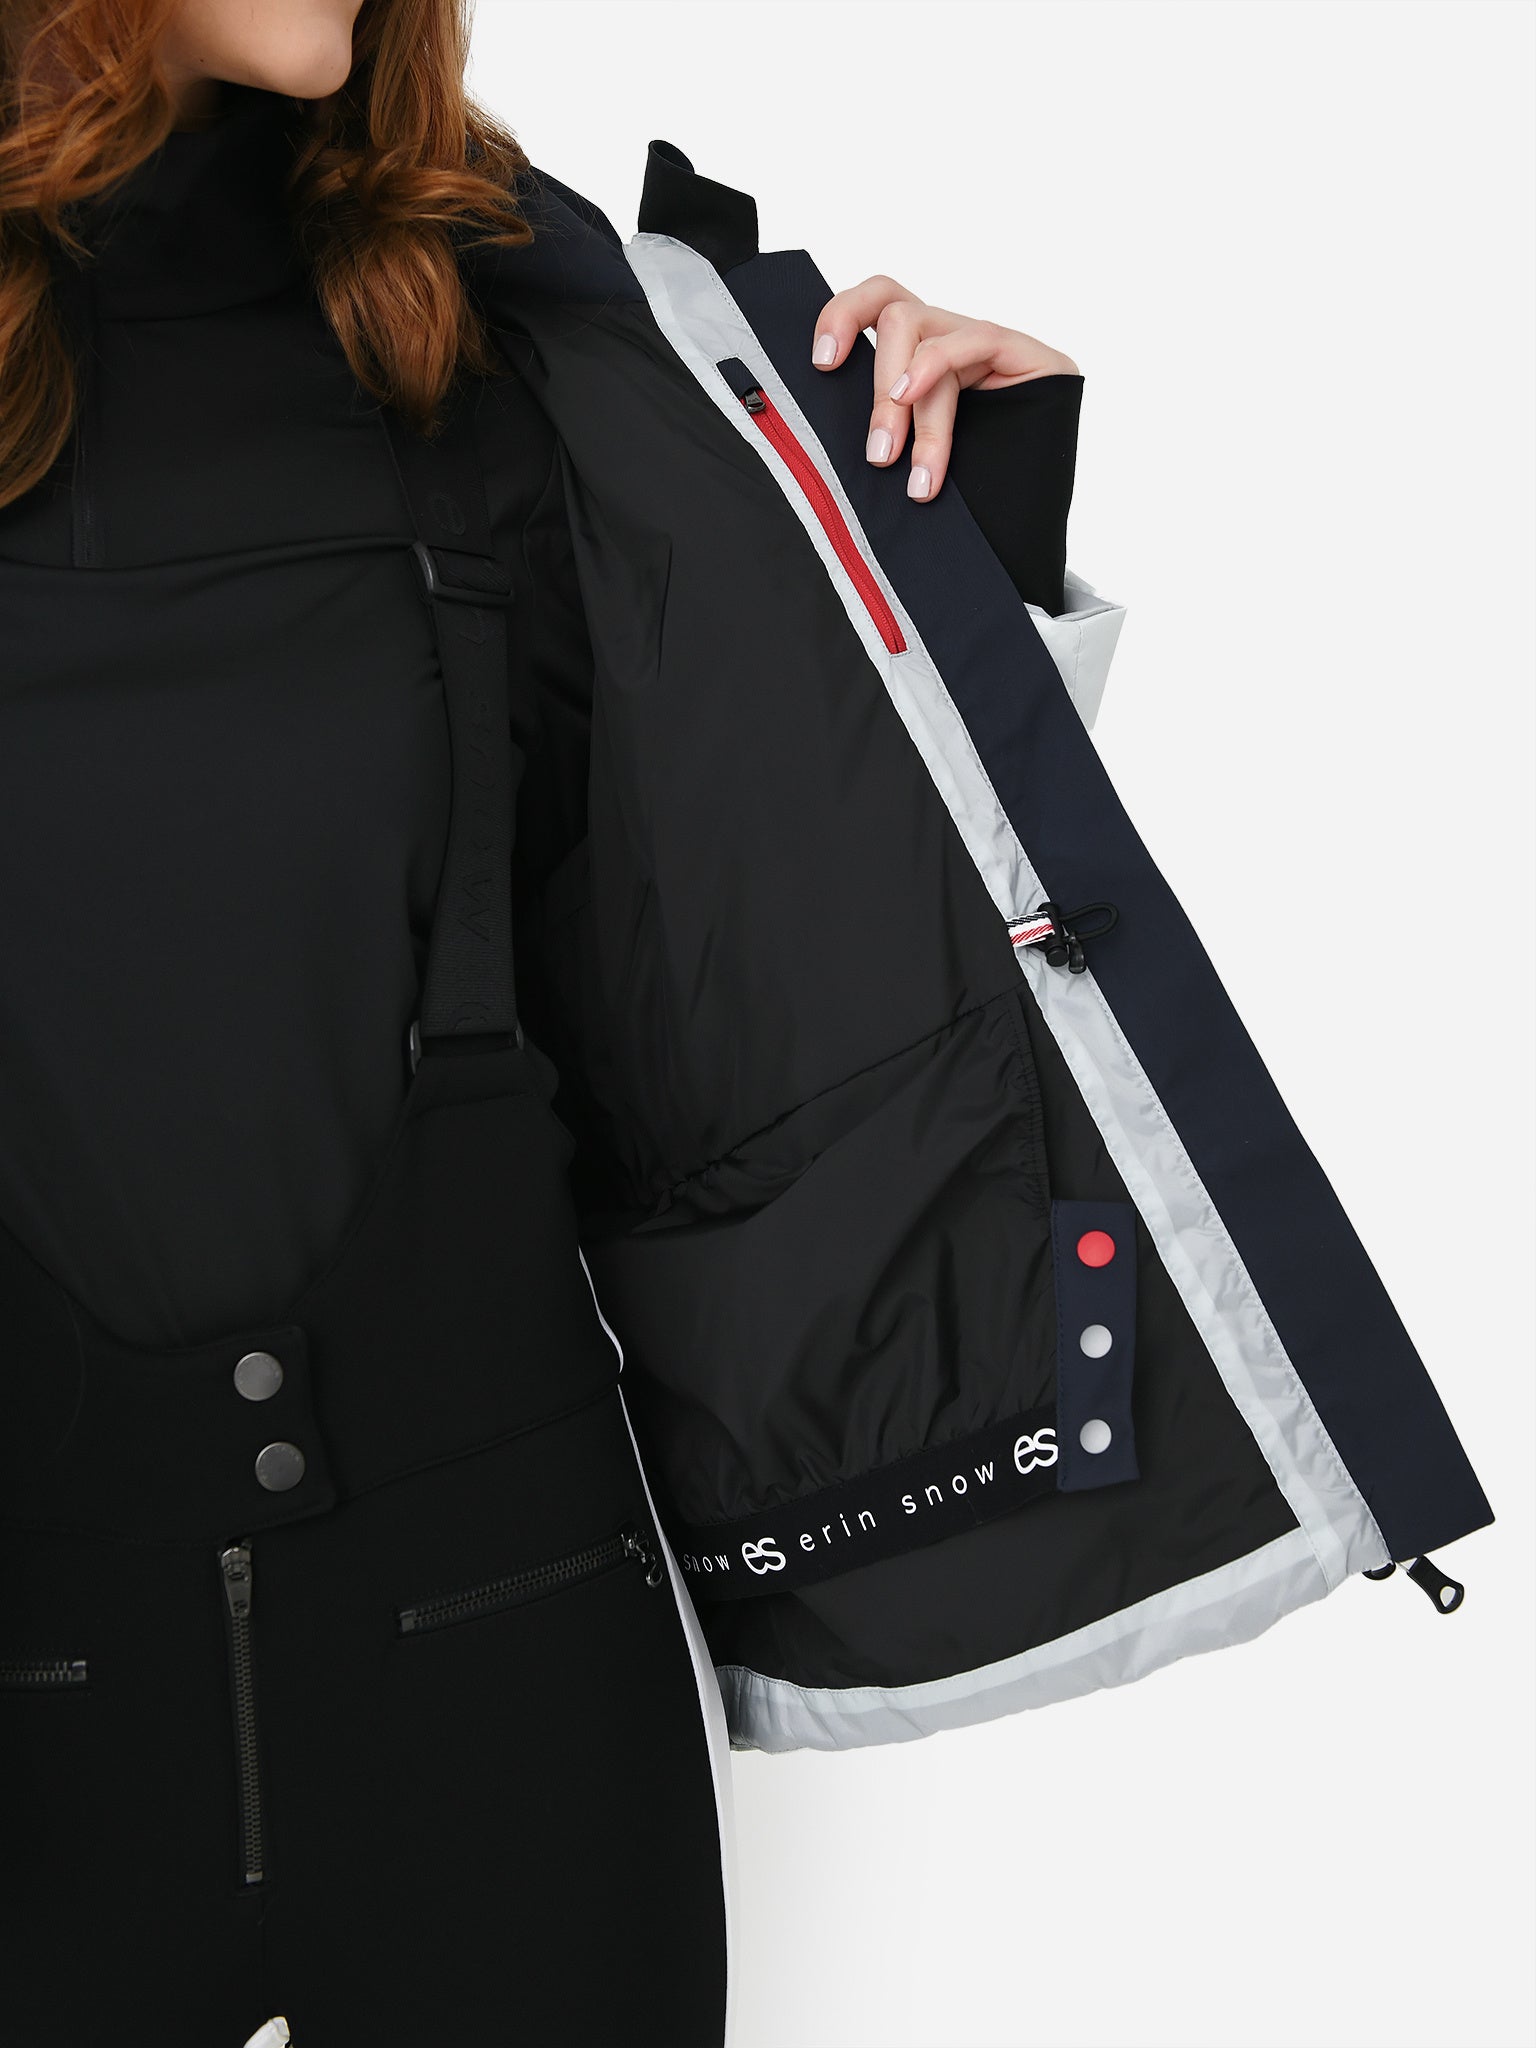 Erin Snow Women's Kat Chevron Eco Sporty Jacket